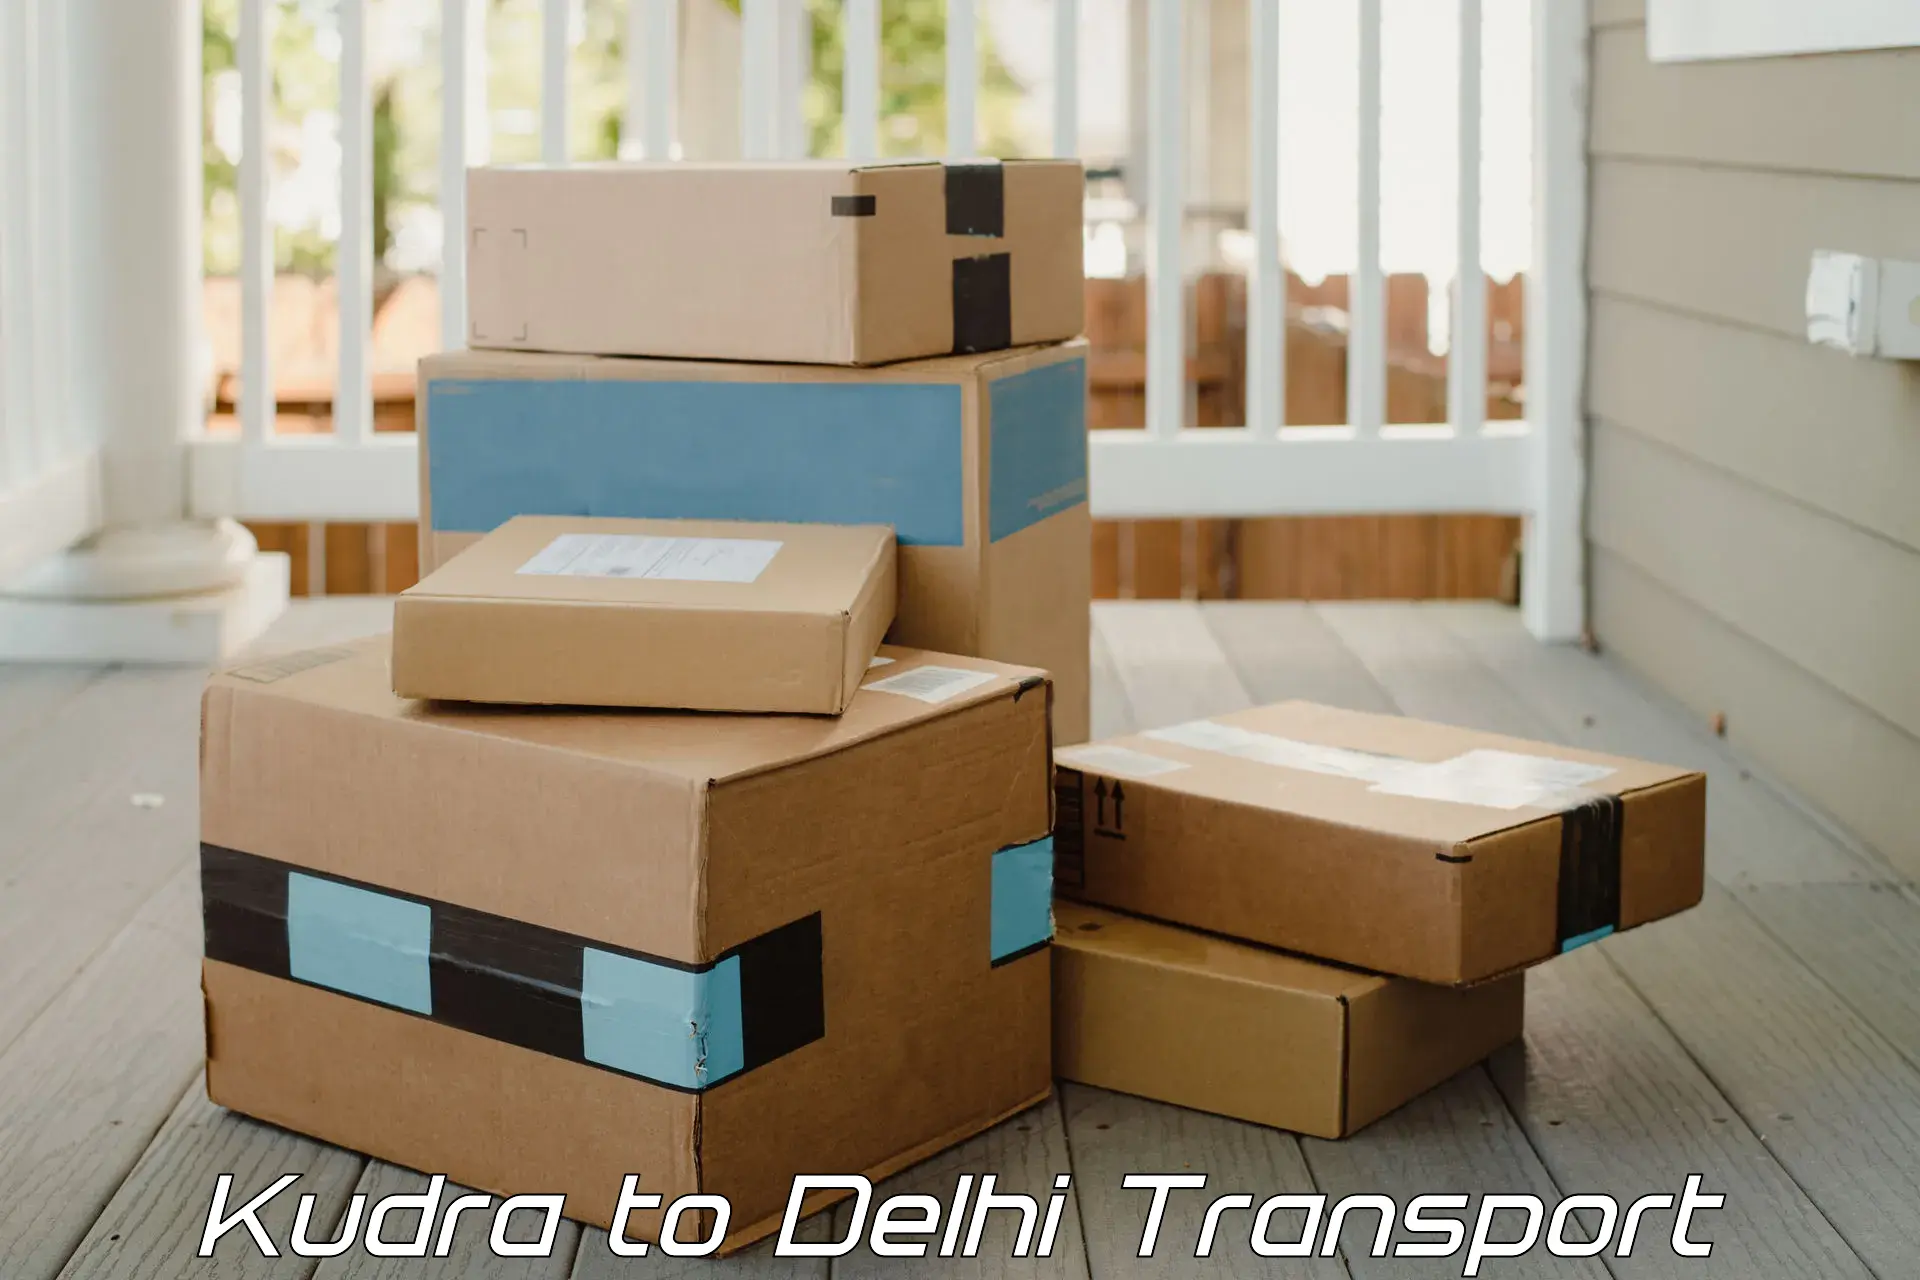 Transport in sharing Kudra to East Delhi